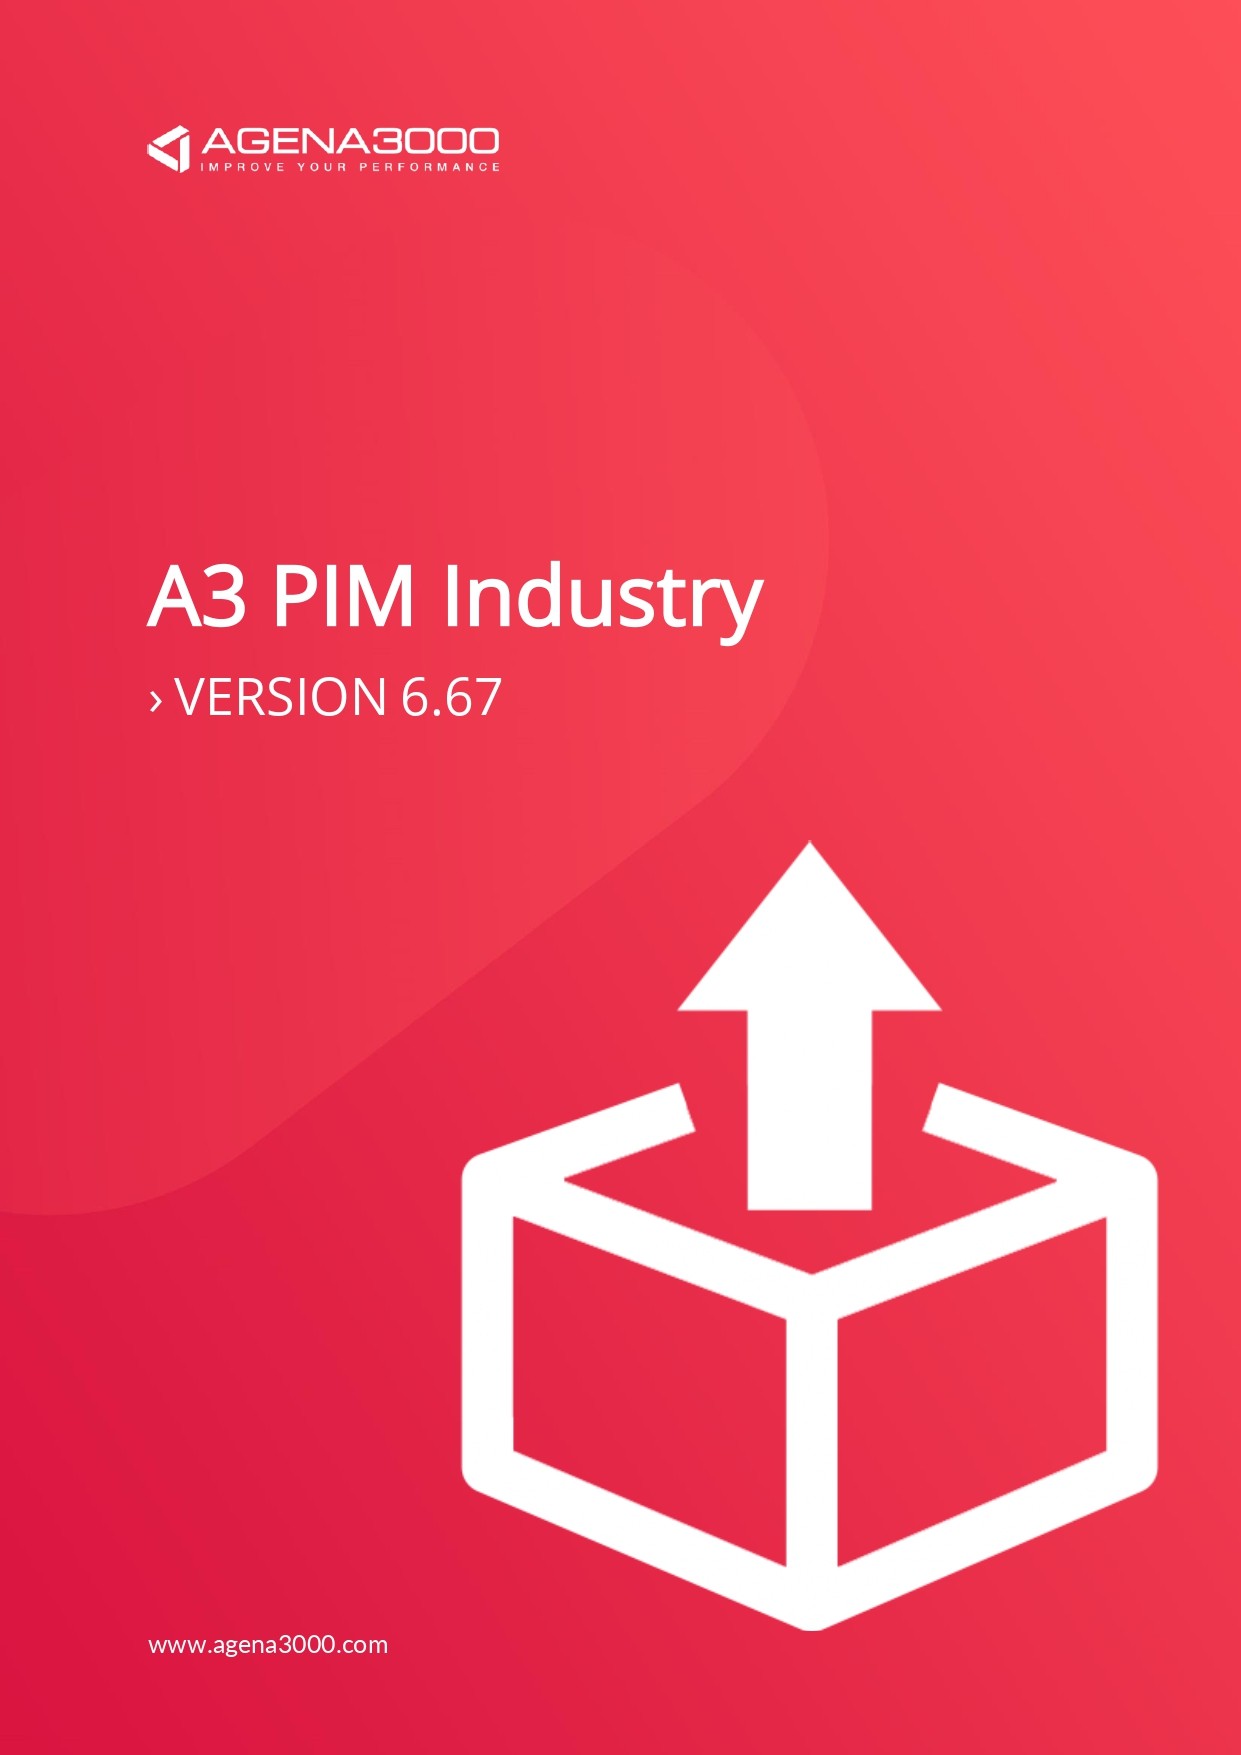 Release-Note-Pim-Industry0001.jpg